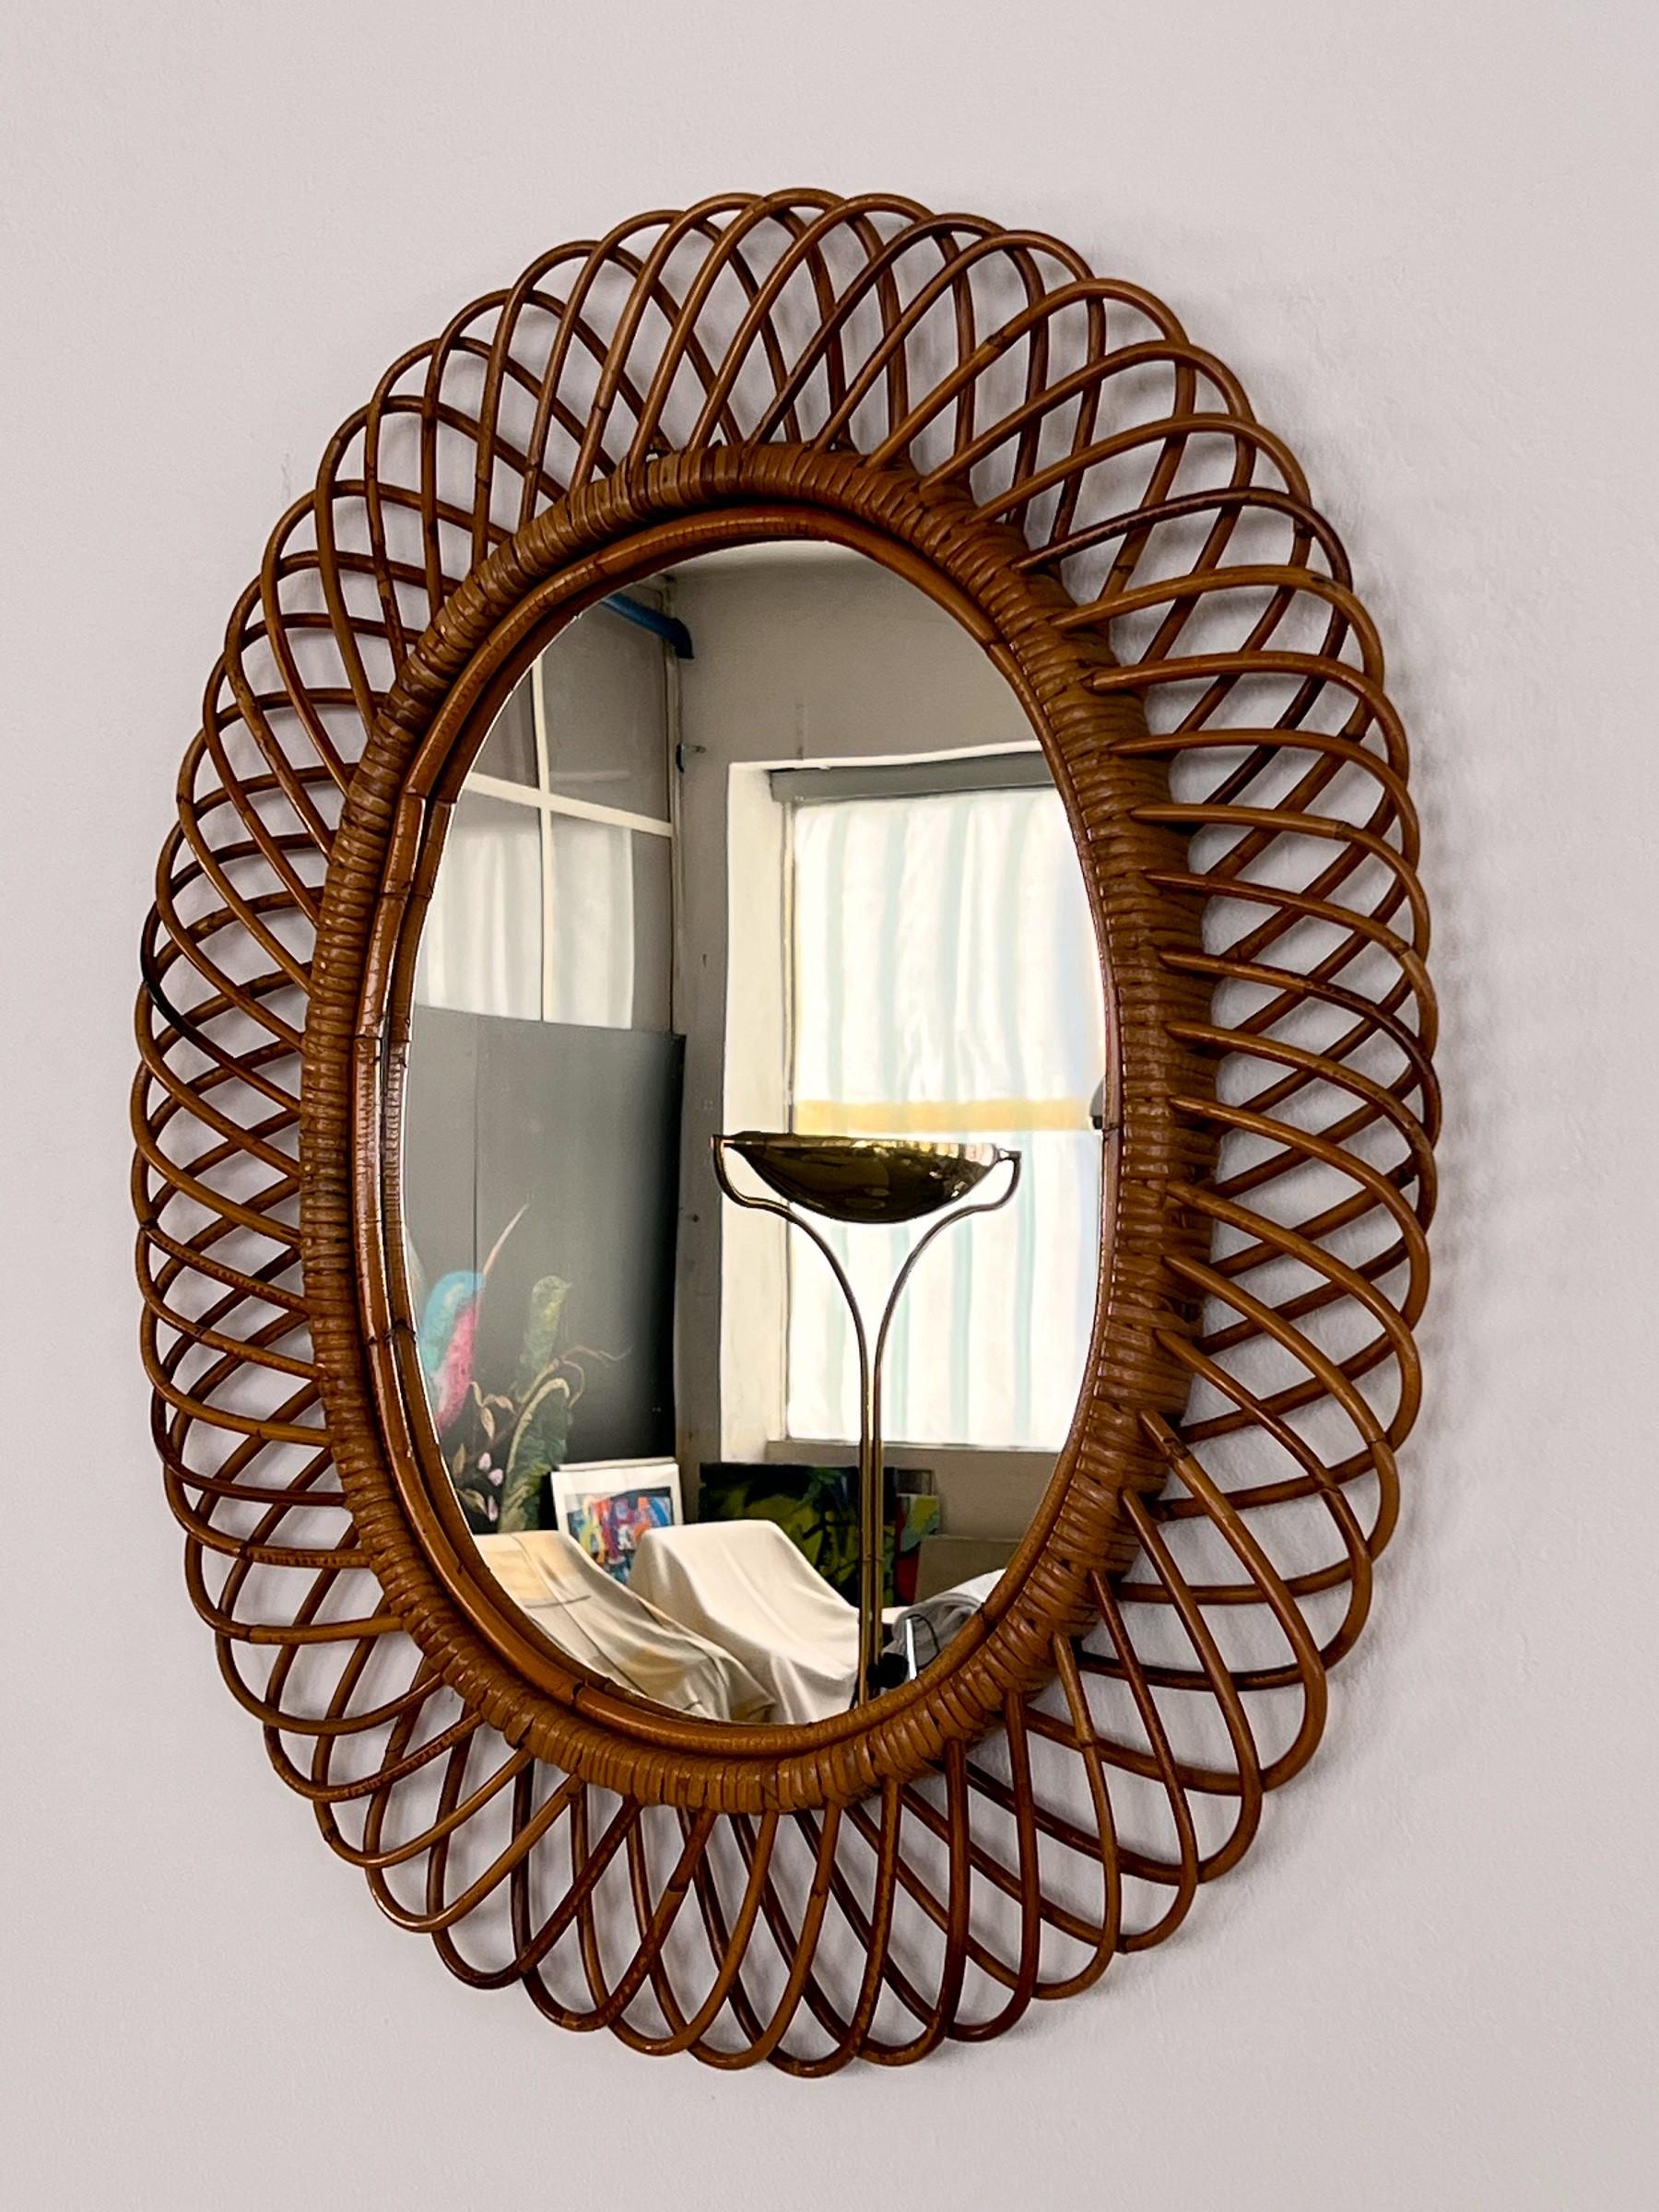 Magnifique miroir mural organique italien qui présente un grand cadre ovale en rotin avec écorce.
Le miroir est fabriqué en Italie, typiquement pour les années 1960, dans le style de Franco Albini.
Le verre du miroir est en très bon état avec des